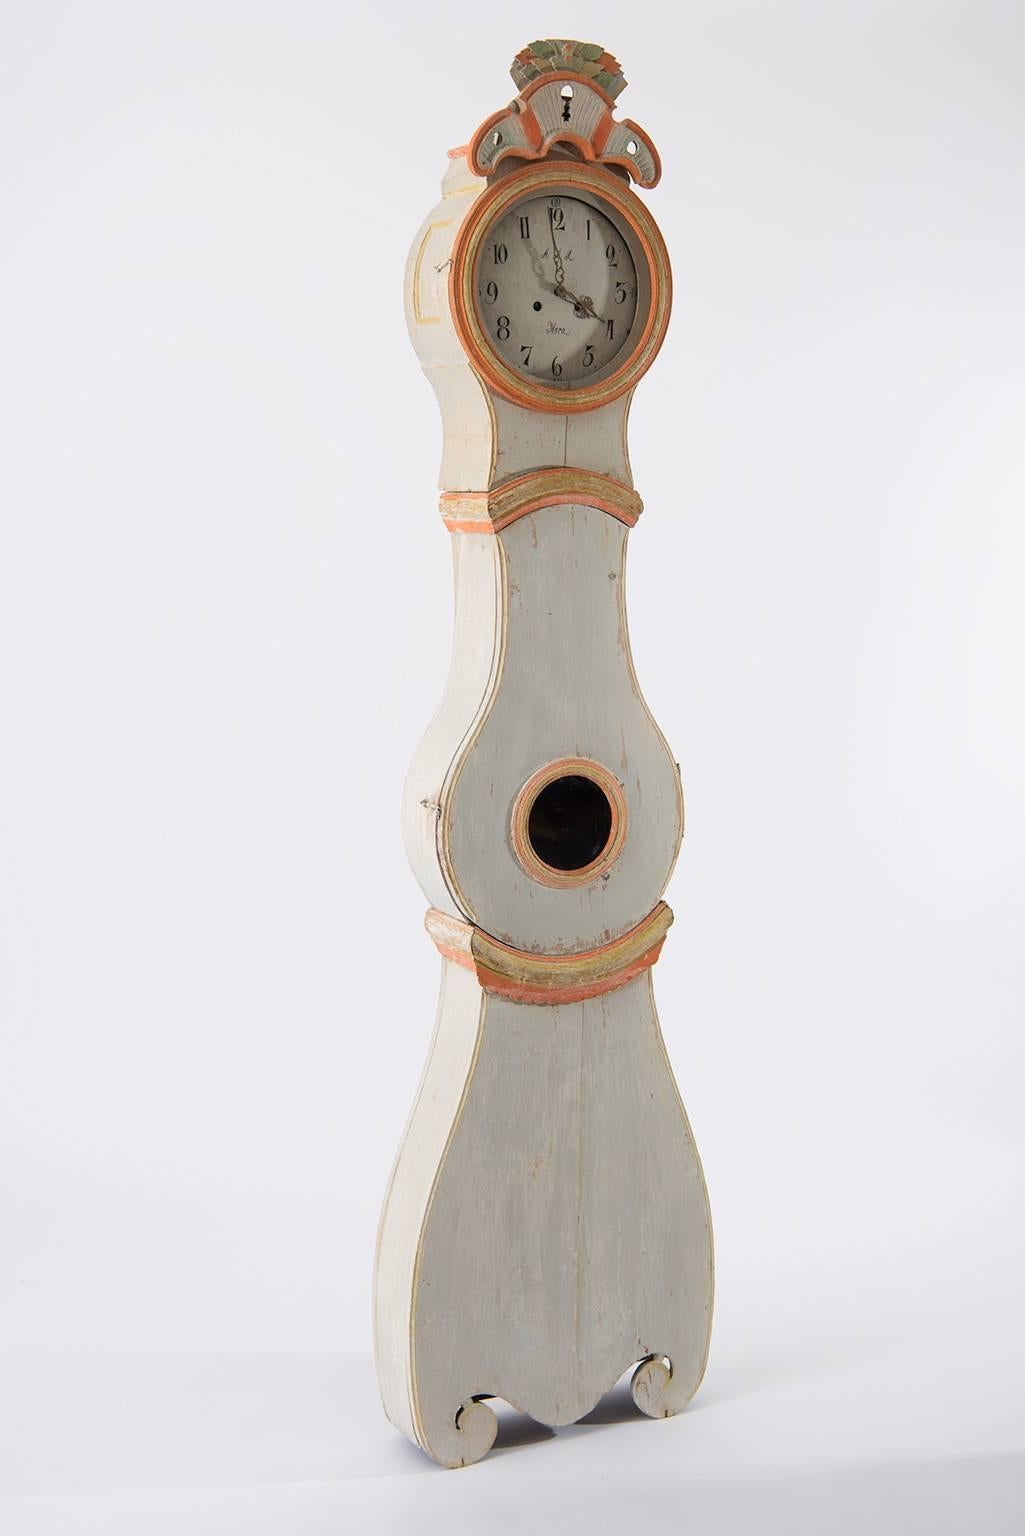 Rokoko-Langgehäuseuhr aus Nordschweden, hergestellt in den ersten Jahren des 19. Jahrhunderts. Die Standuhr oder Mora-Uhr, wie sie manchmal genannt wird, ist bis auf die Originalfarbe trocken geschabt. Auf der Innenseite der Uhr steht, dass sie